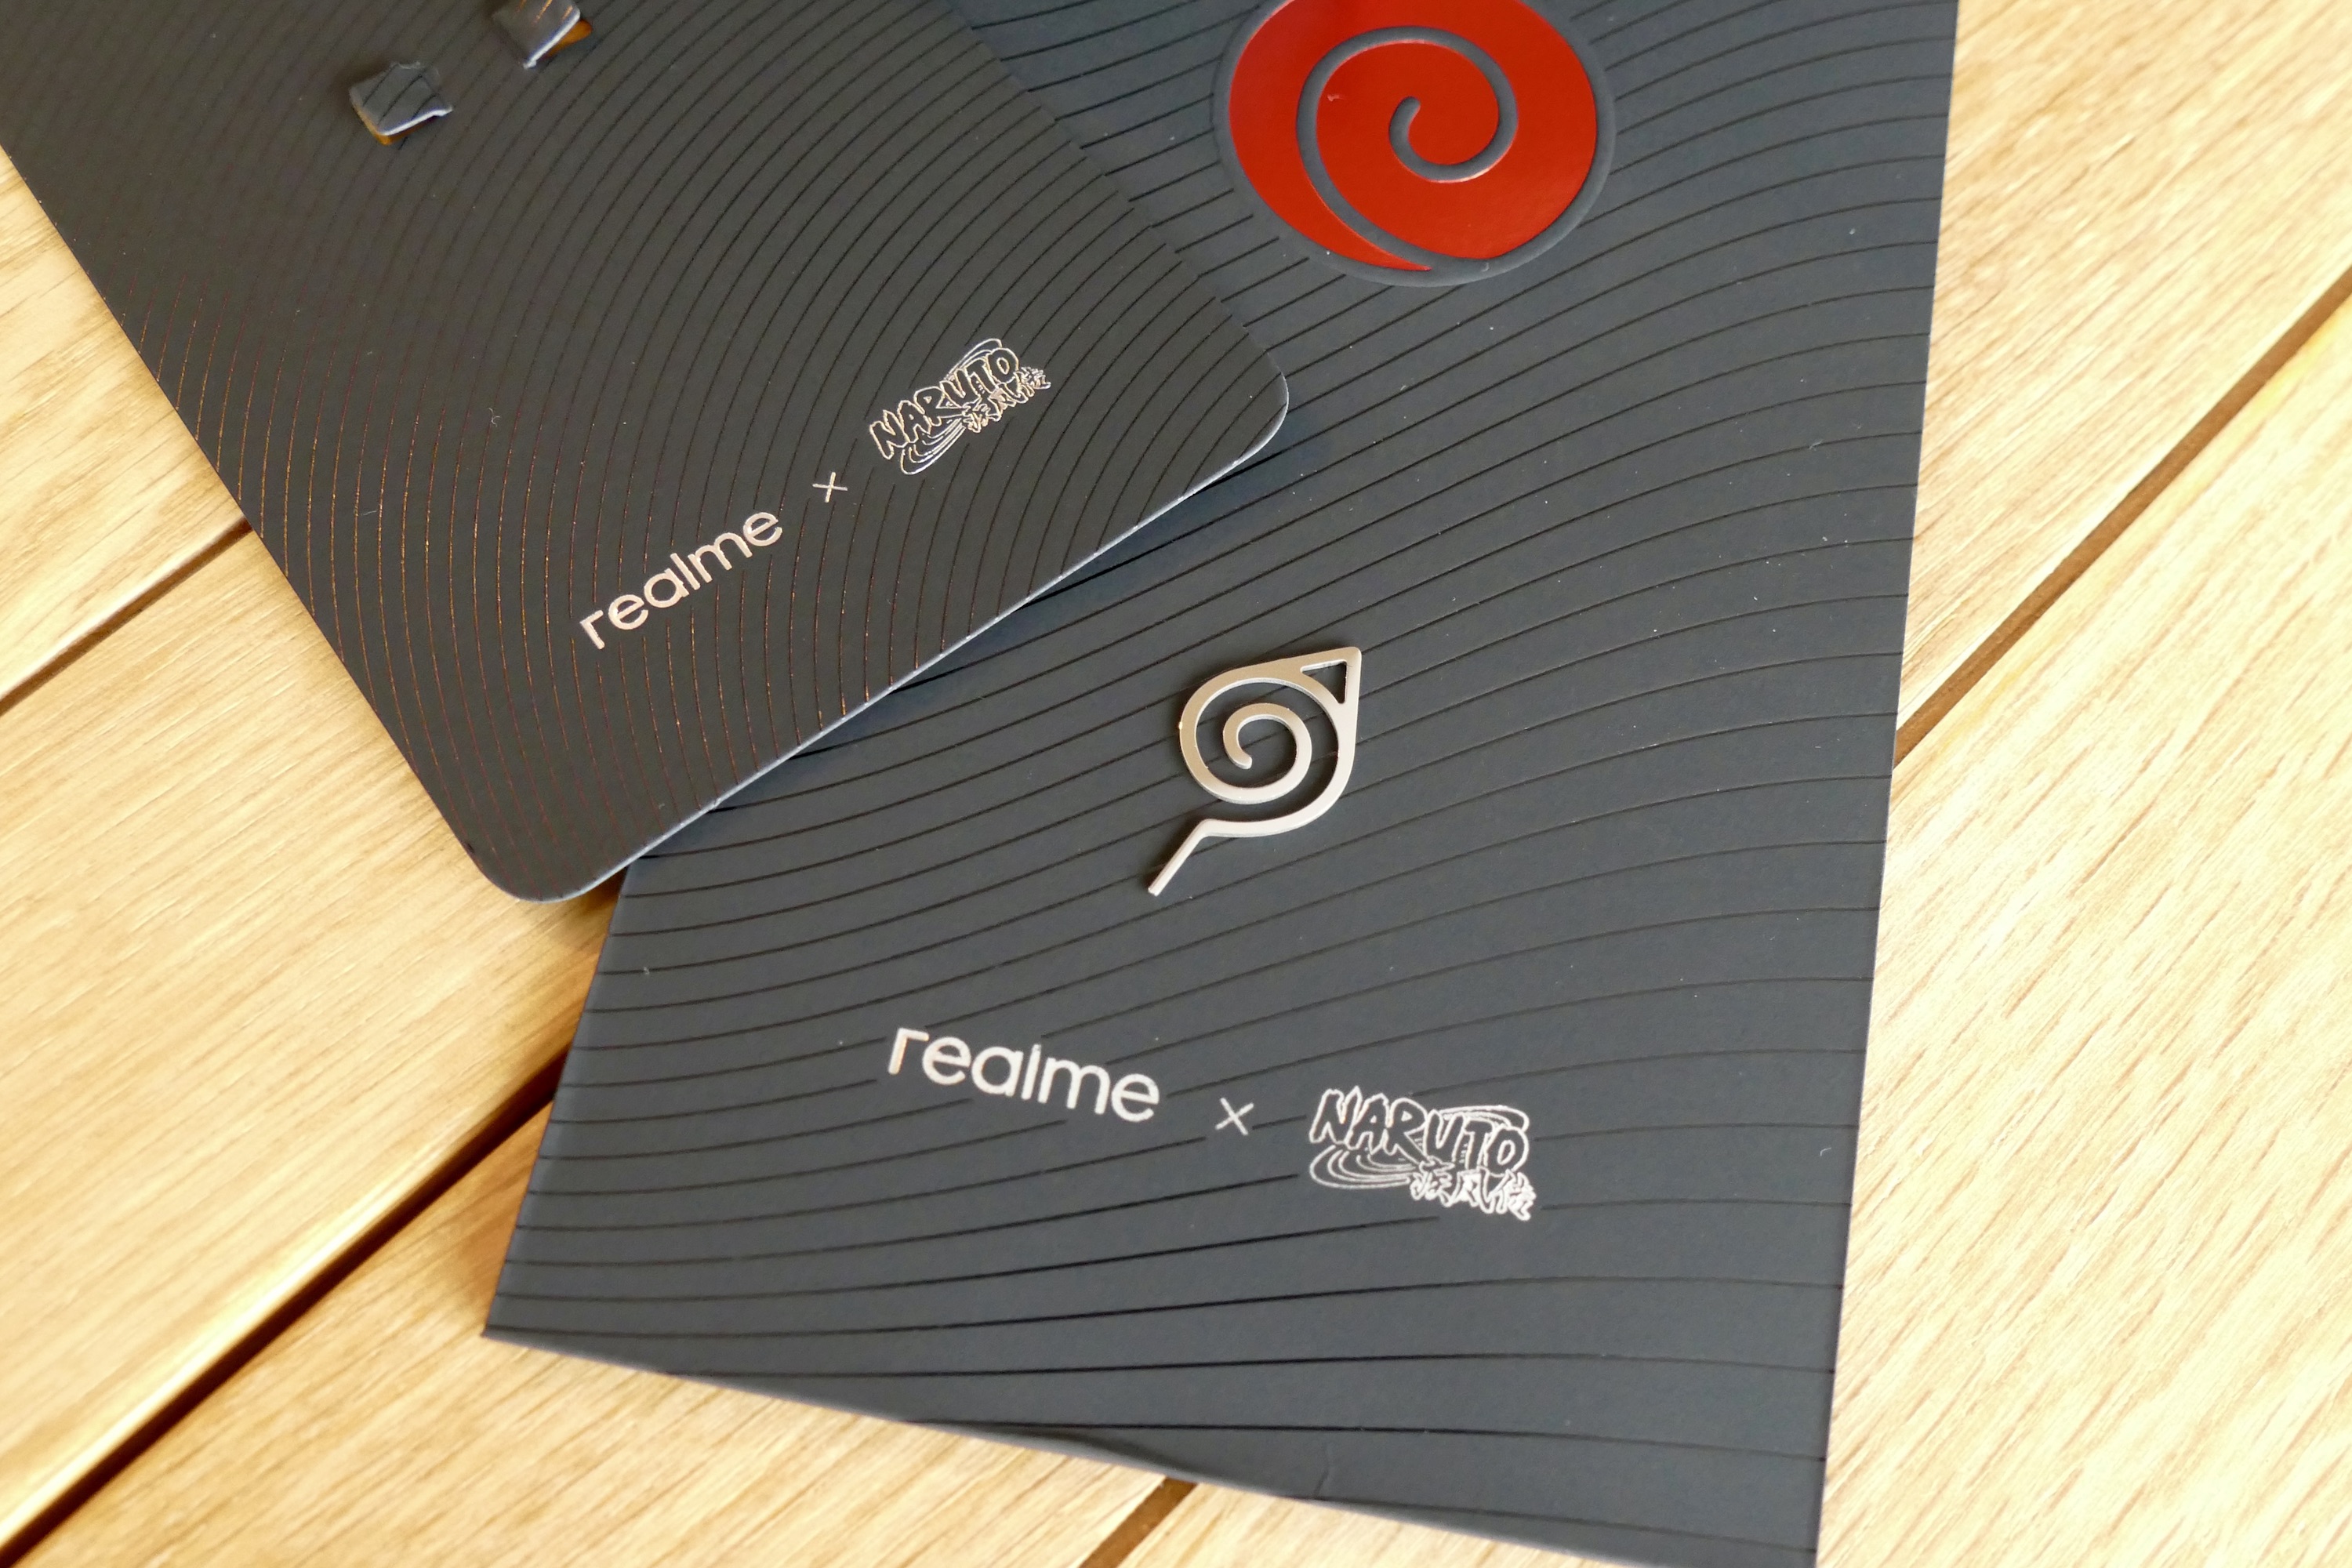 The Realme x Naruto GT Neo 3's SIM removal tool.